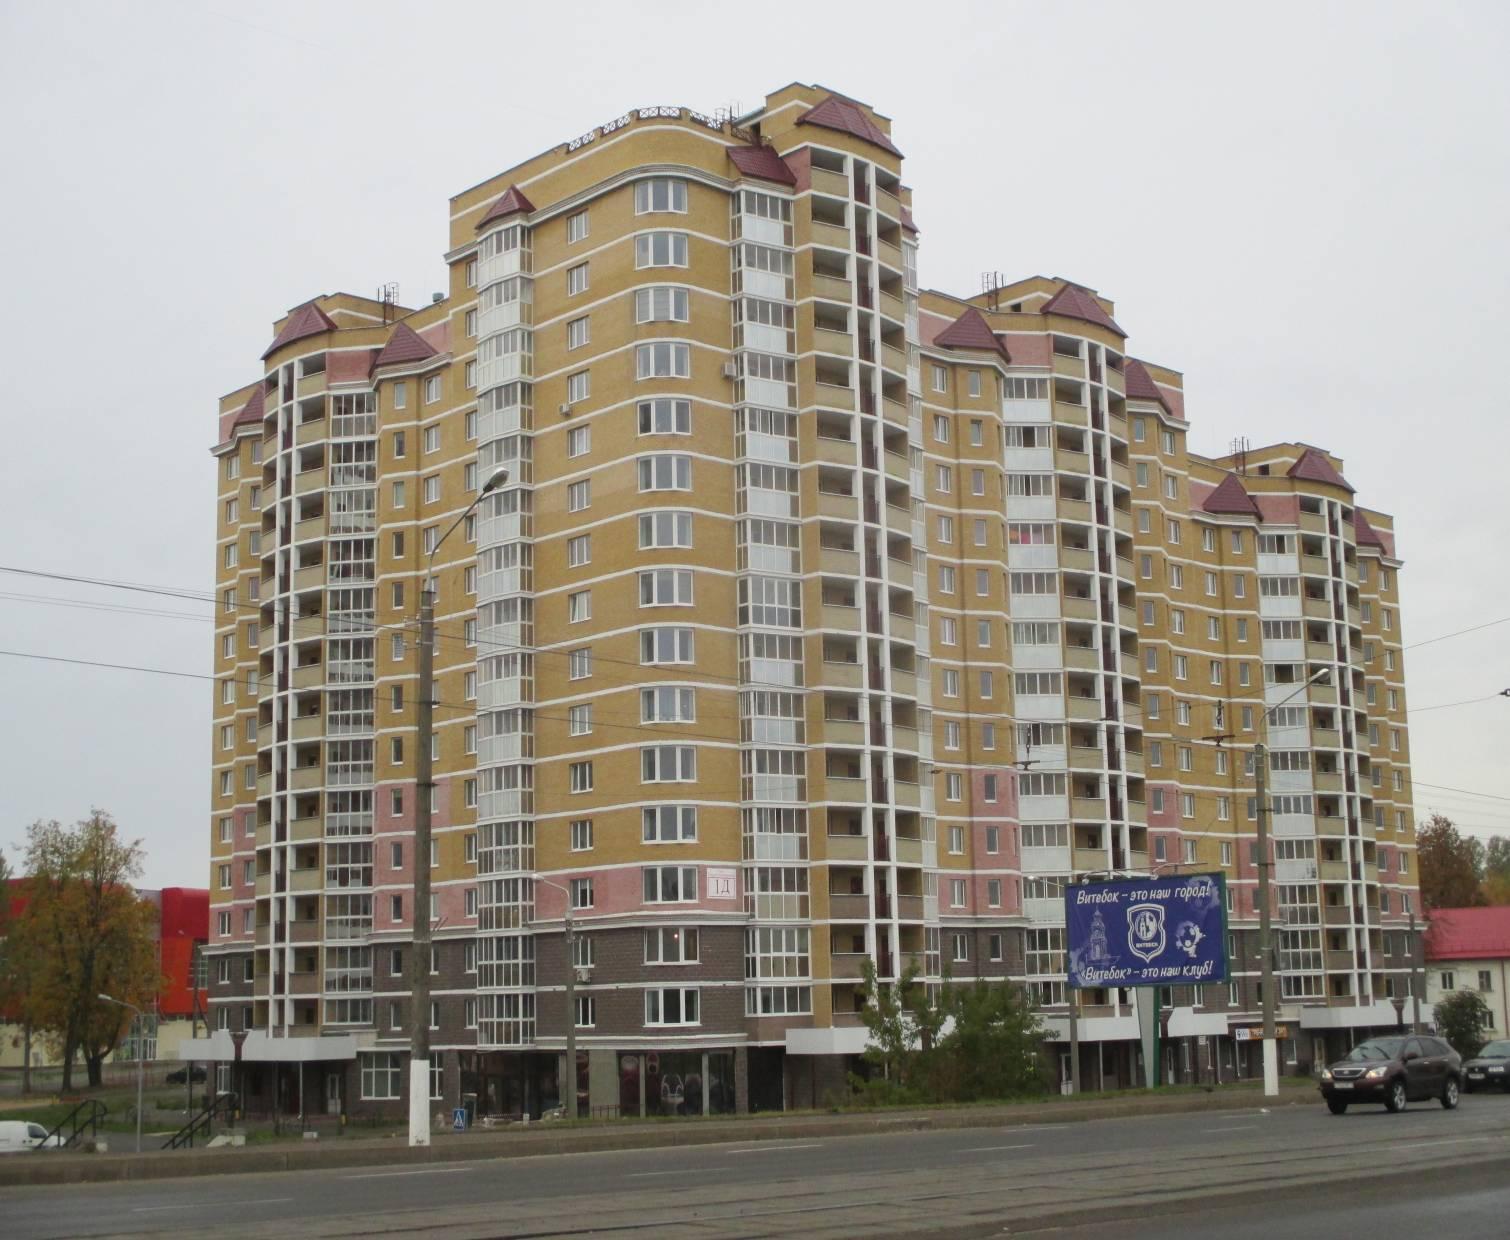 Многоквартирный жилой дом. г. Витебск